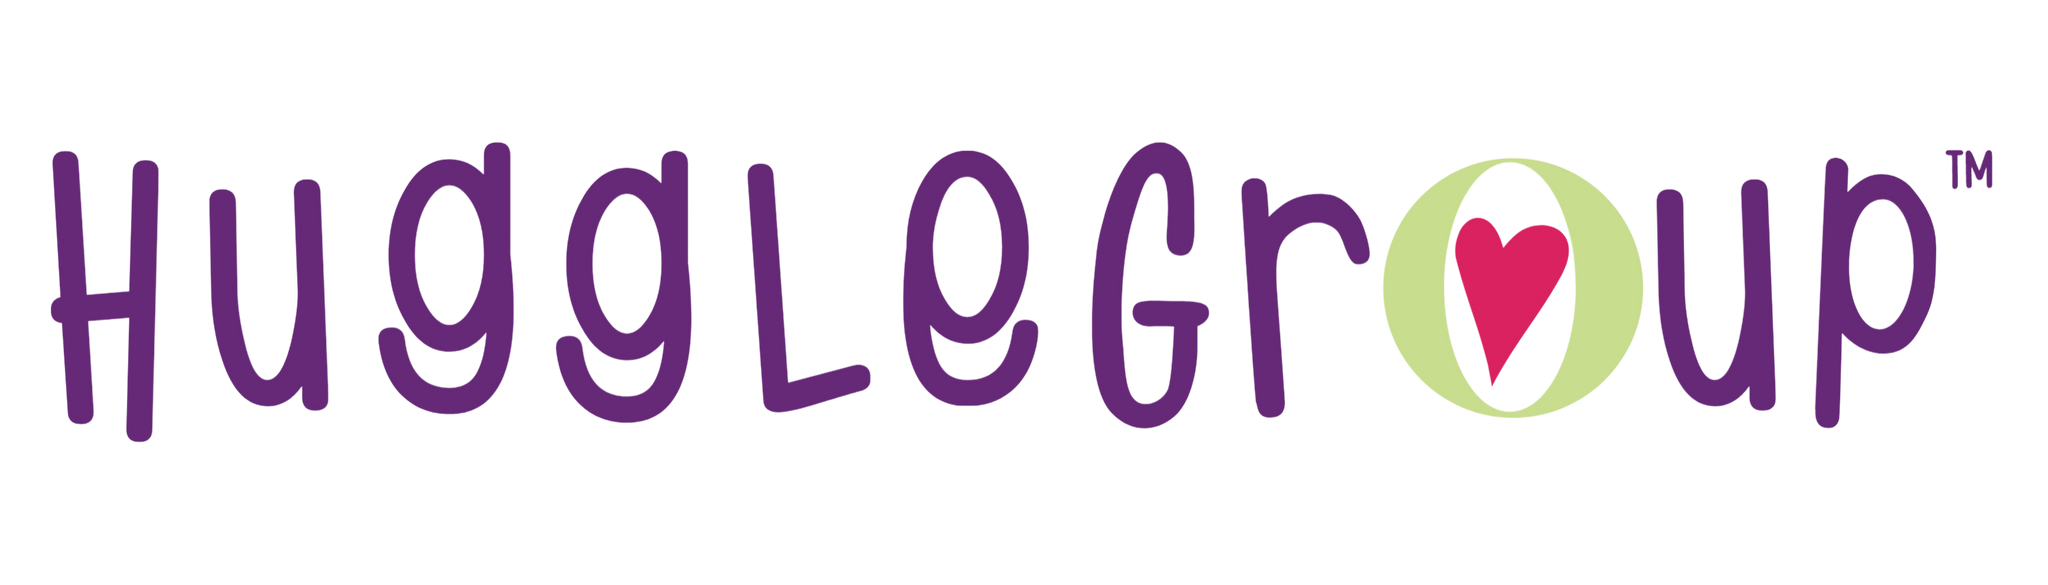 HuggleGroup Logo